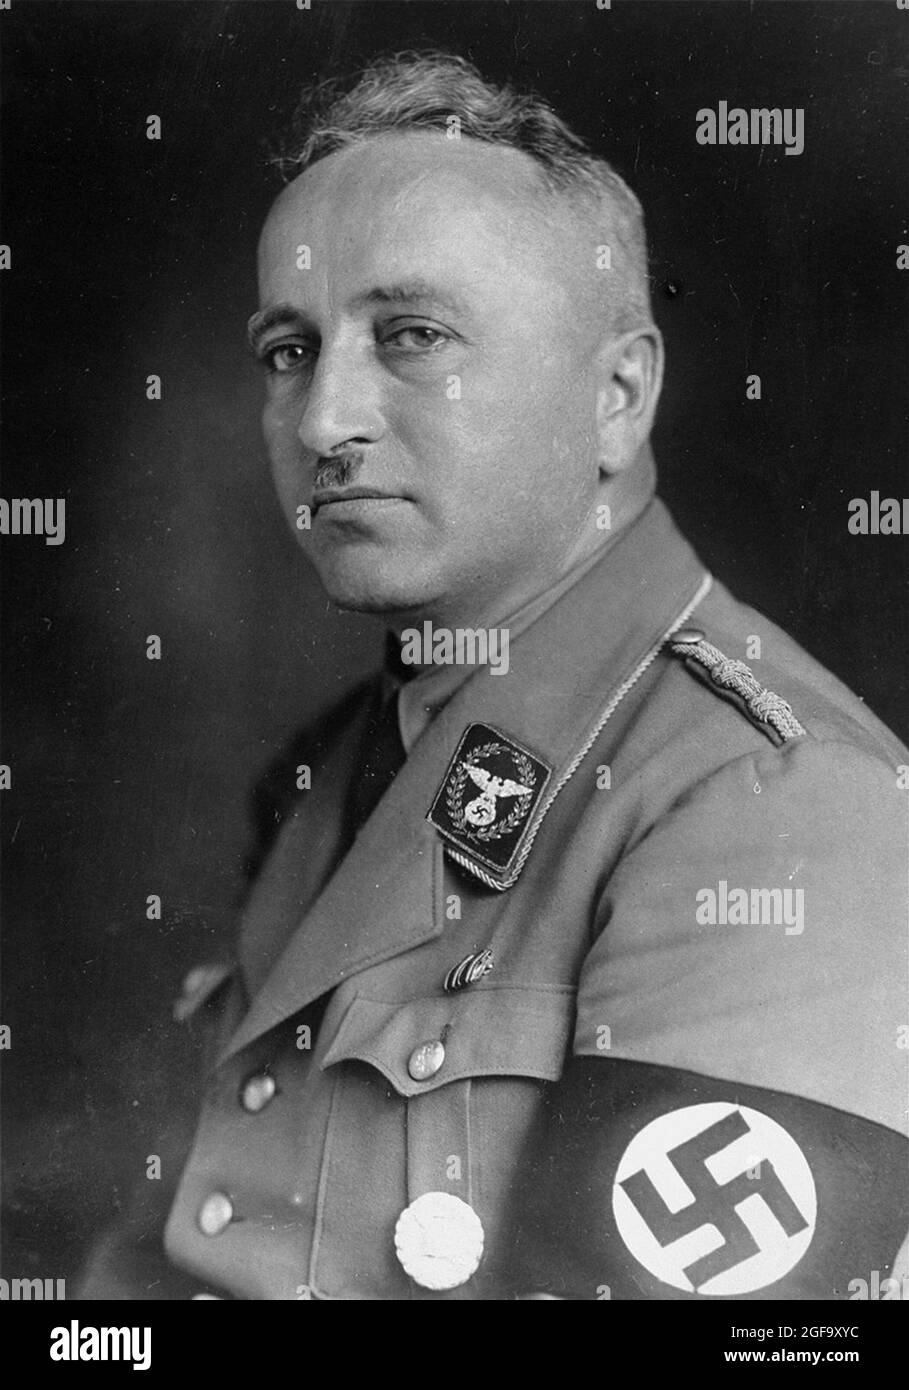 Un ritratto del leader nazista Robert Ley. Dal 1933 al 1945 fu capo del fronte laburista tedesco. Fu catturato nel 1945 e si suicidò in prigione. Foto Stock